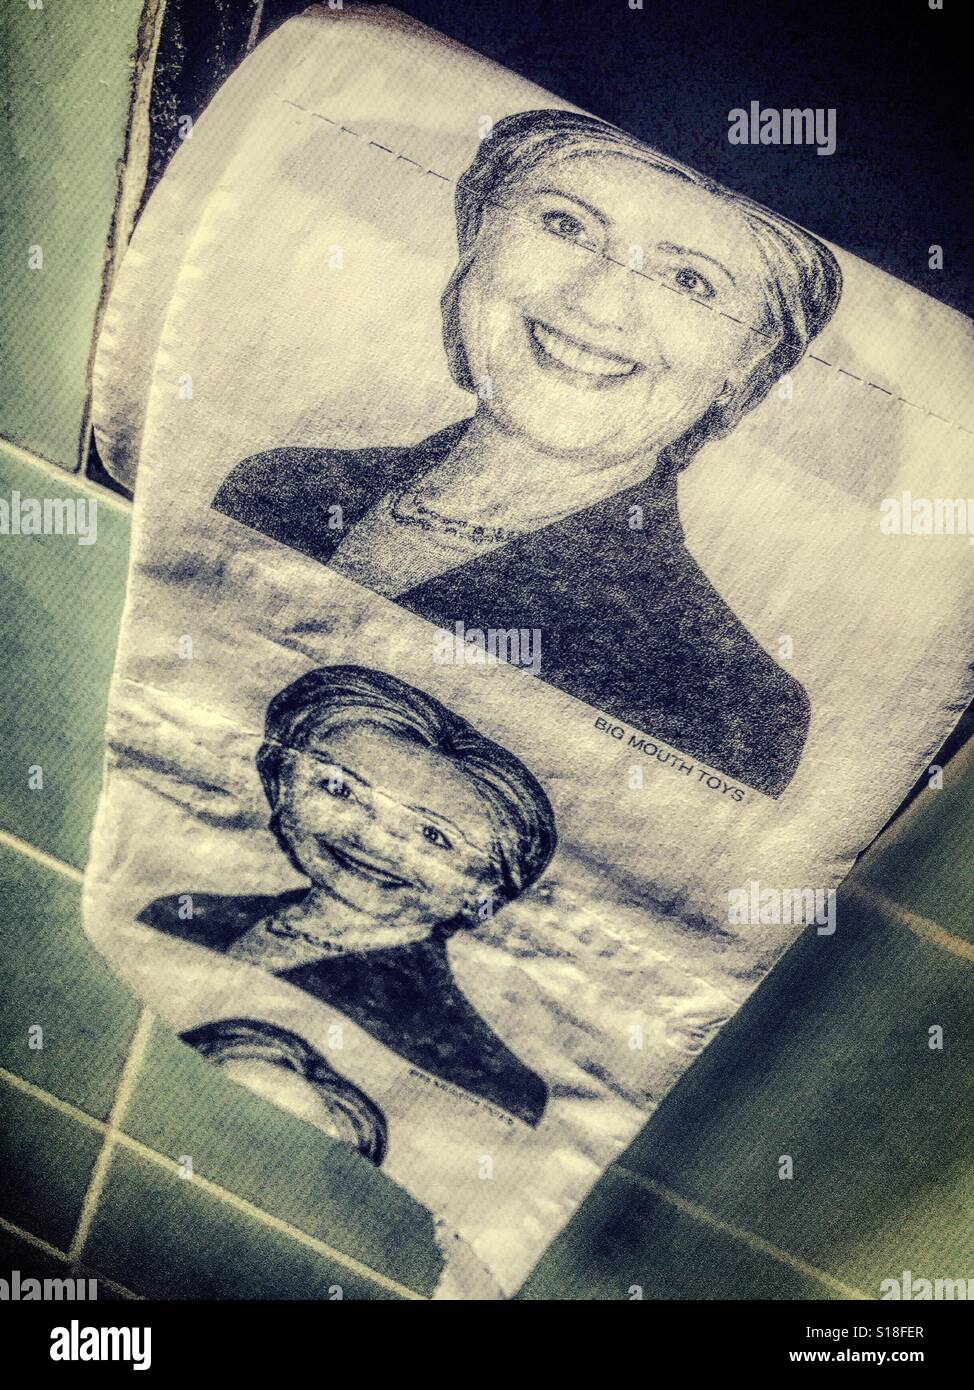 Hillary Clinton nouveauté humoristique papier toilette, USA Banque D'Images